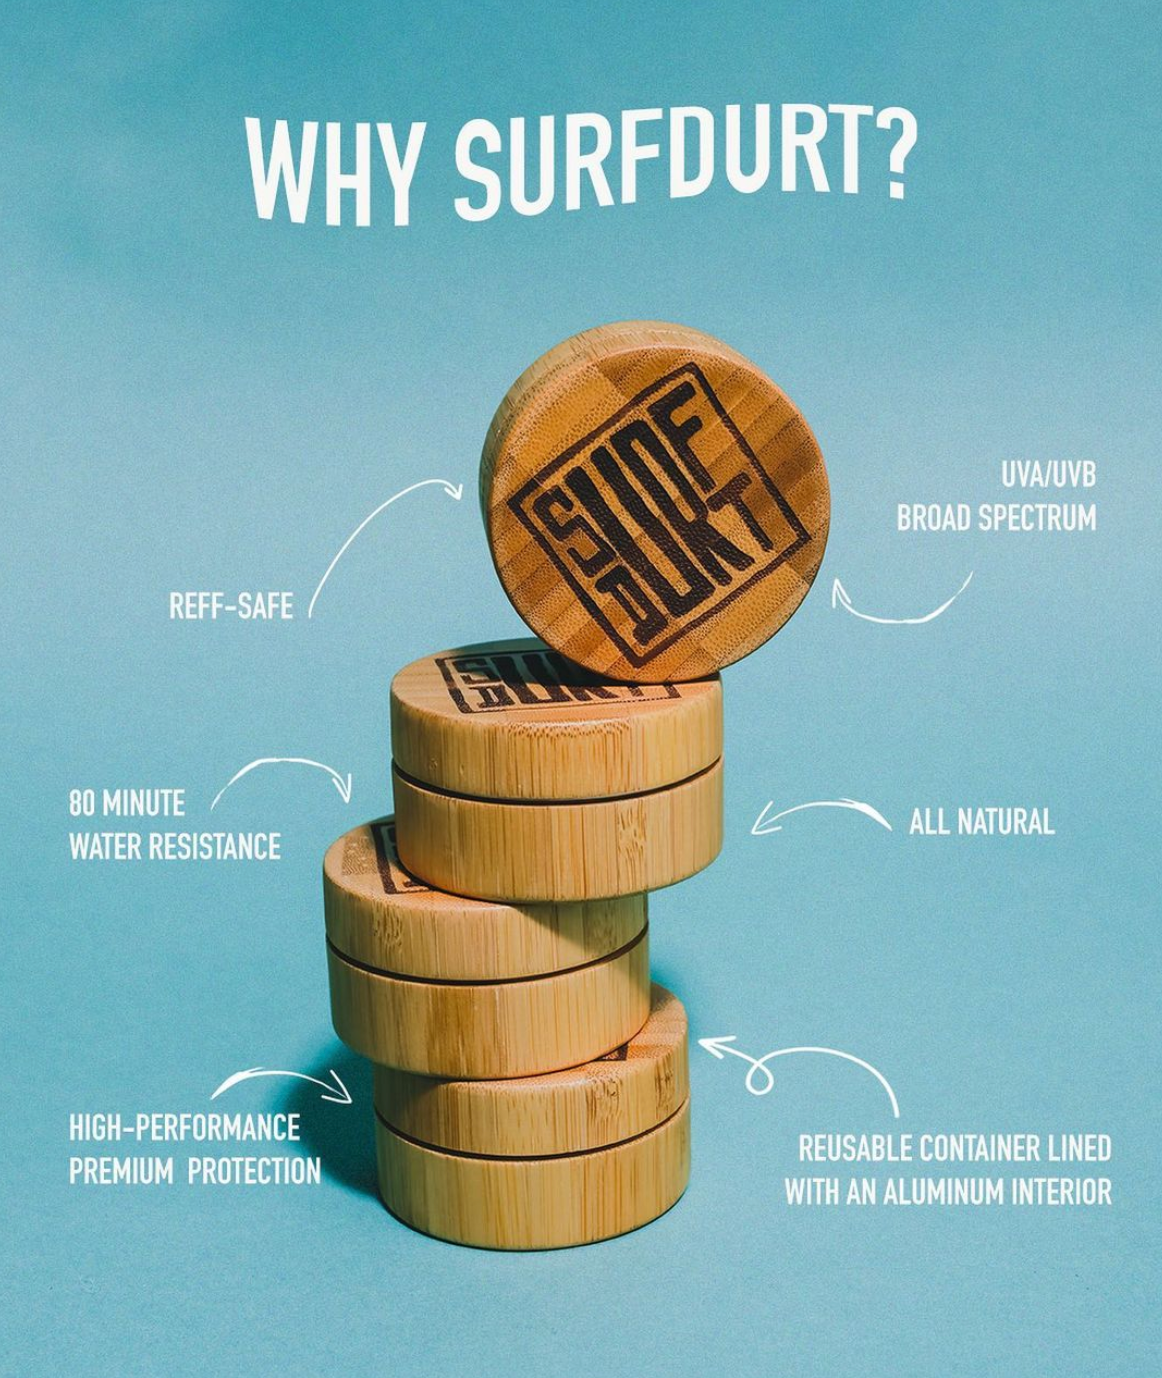 Surf Durt natural sunscreen